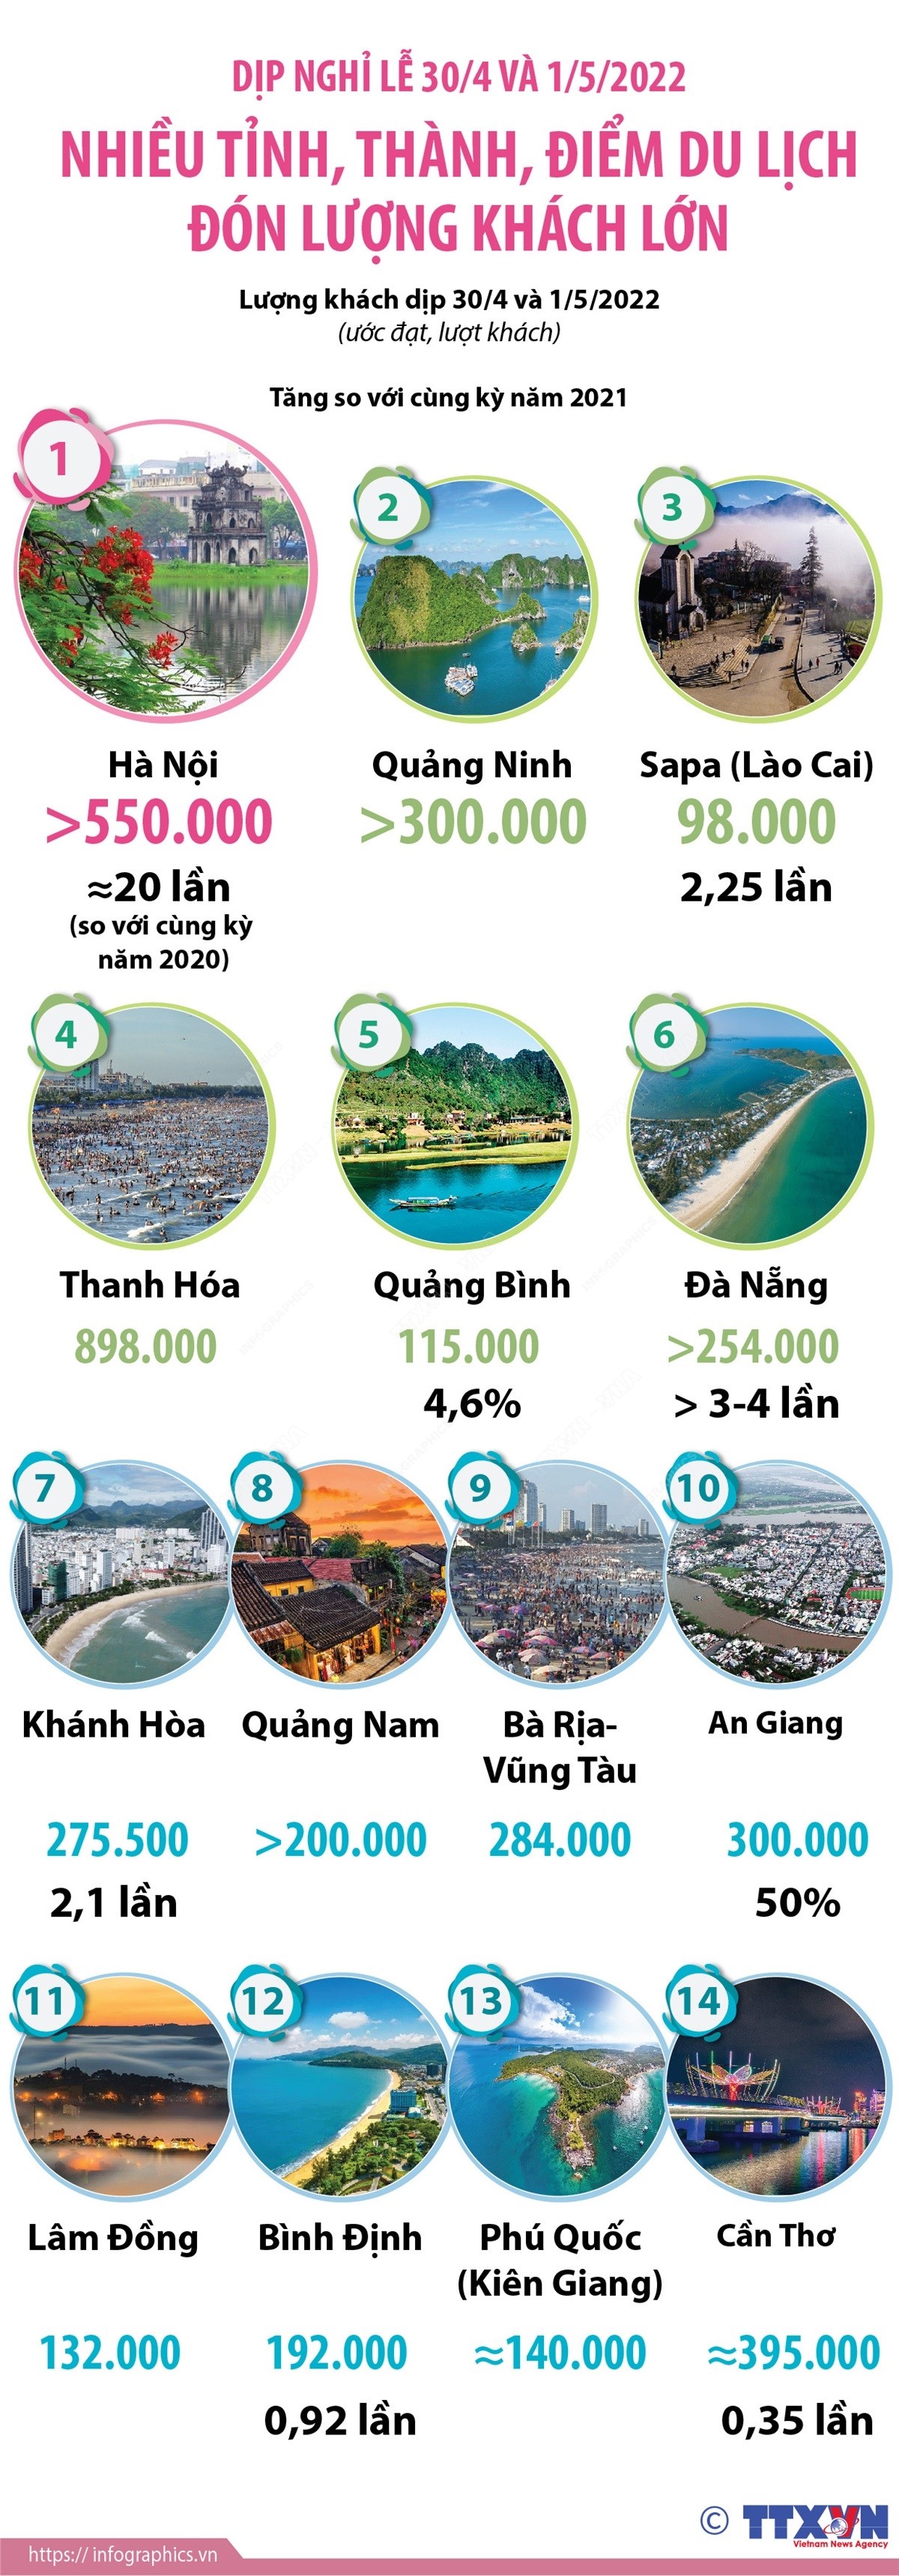 infographic-dip-nghi-le-304-va-152022-nhieu-tinh-thanh-diem-du-lich-don-luong-khach-lon-1651591665.jpg